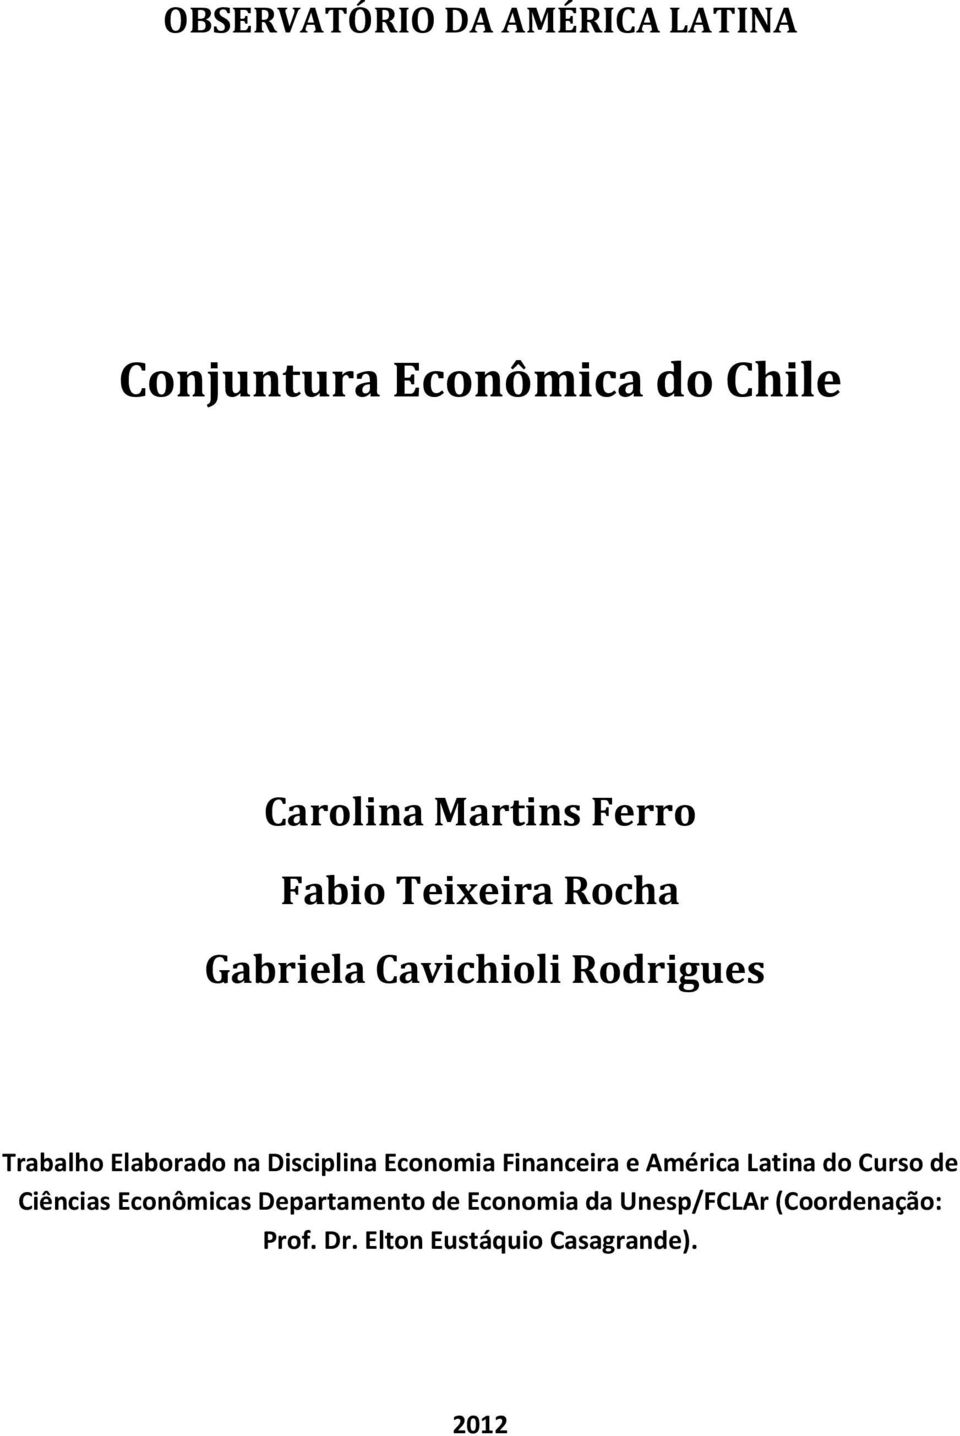 Disciplina Economia Financeira e Latina do Curso de Ciências Econômicas